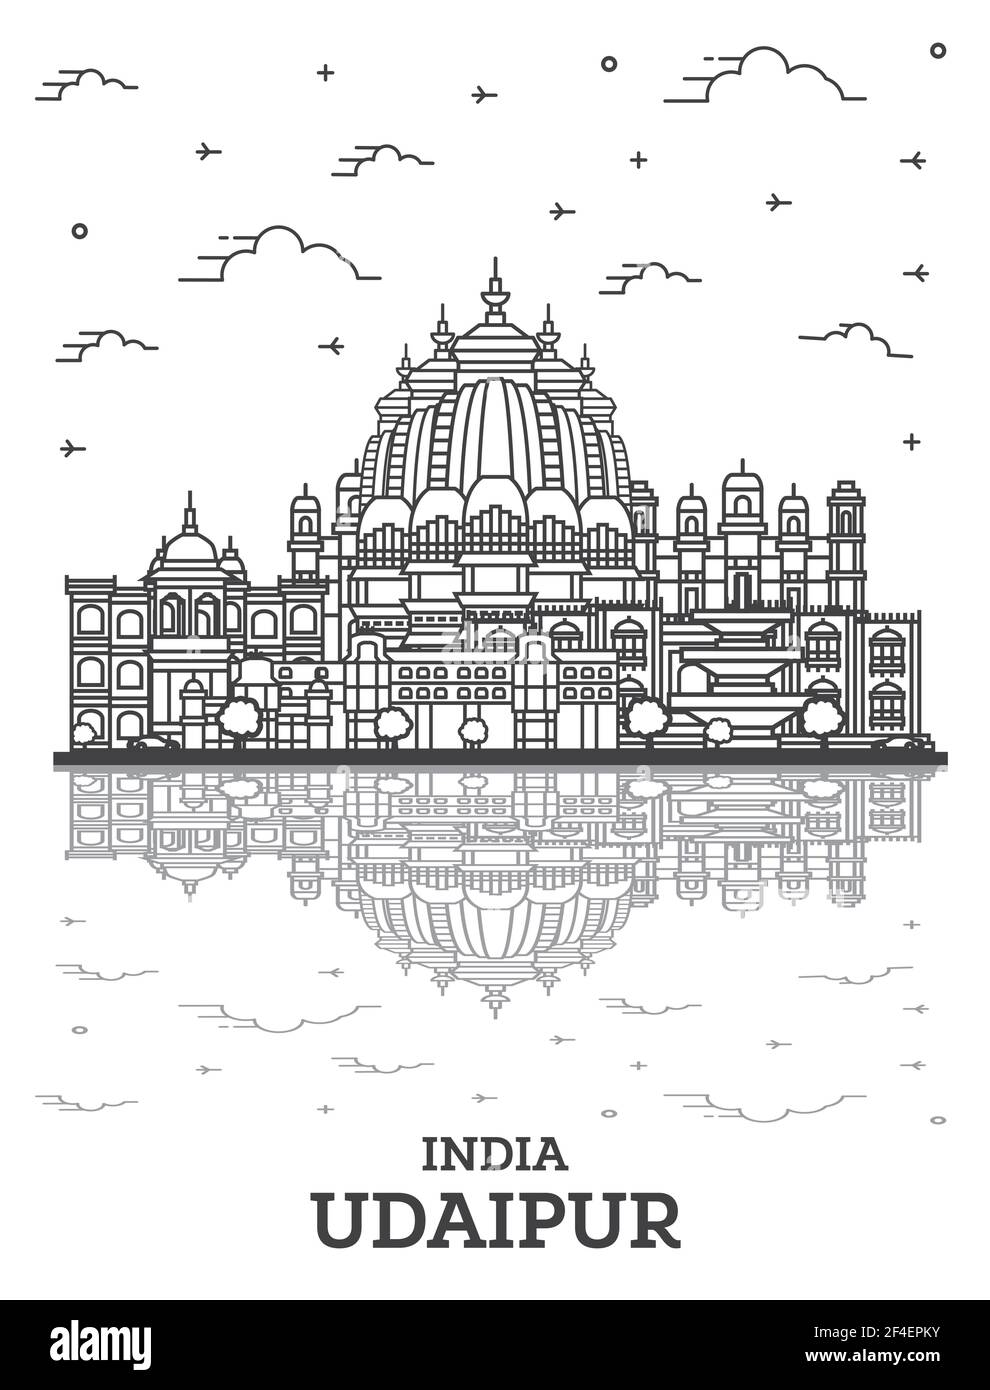 Umrisse Udaipur Indien Skyline der Stadt mit historischen Gebäuden und Reflexionen isoliert auf Weiss. Vector Illustration. Udaipur Stadtbild mit Sehenswürdigkeiten. Stock Vektor